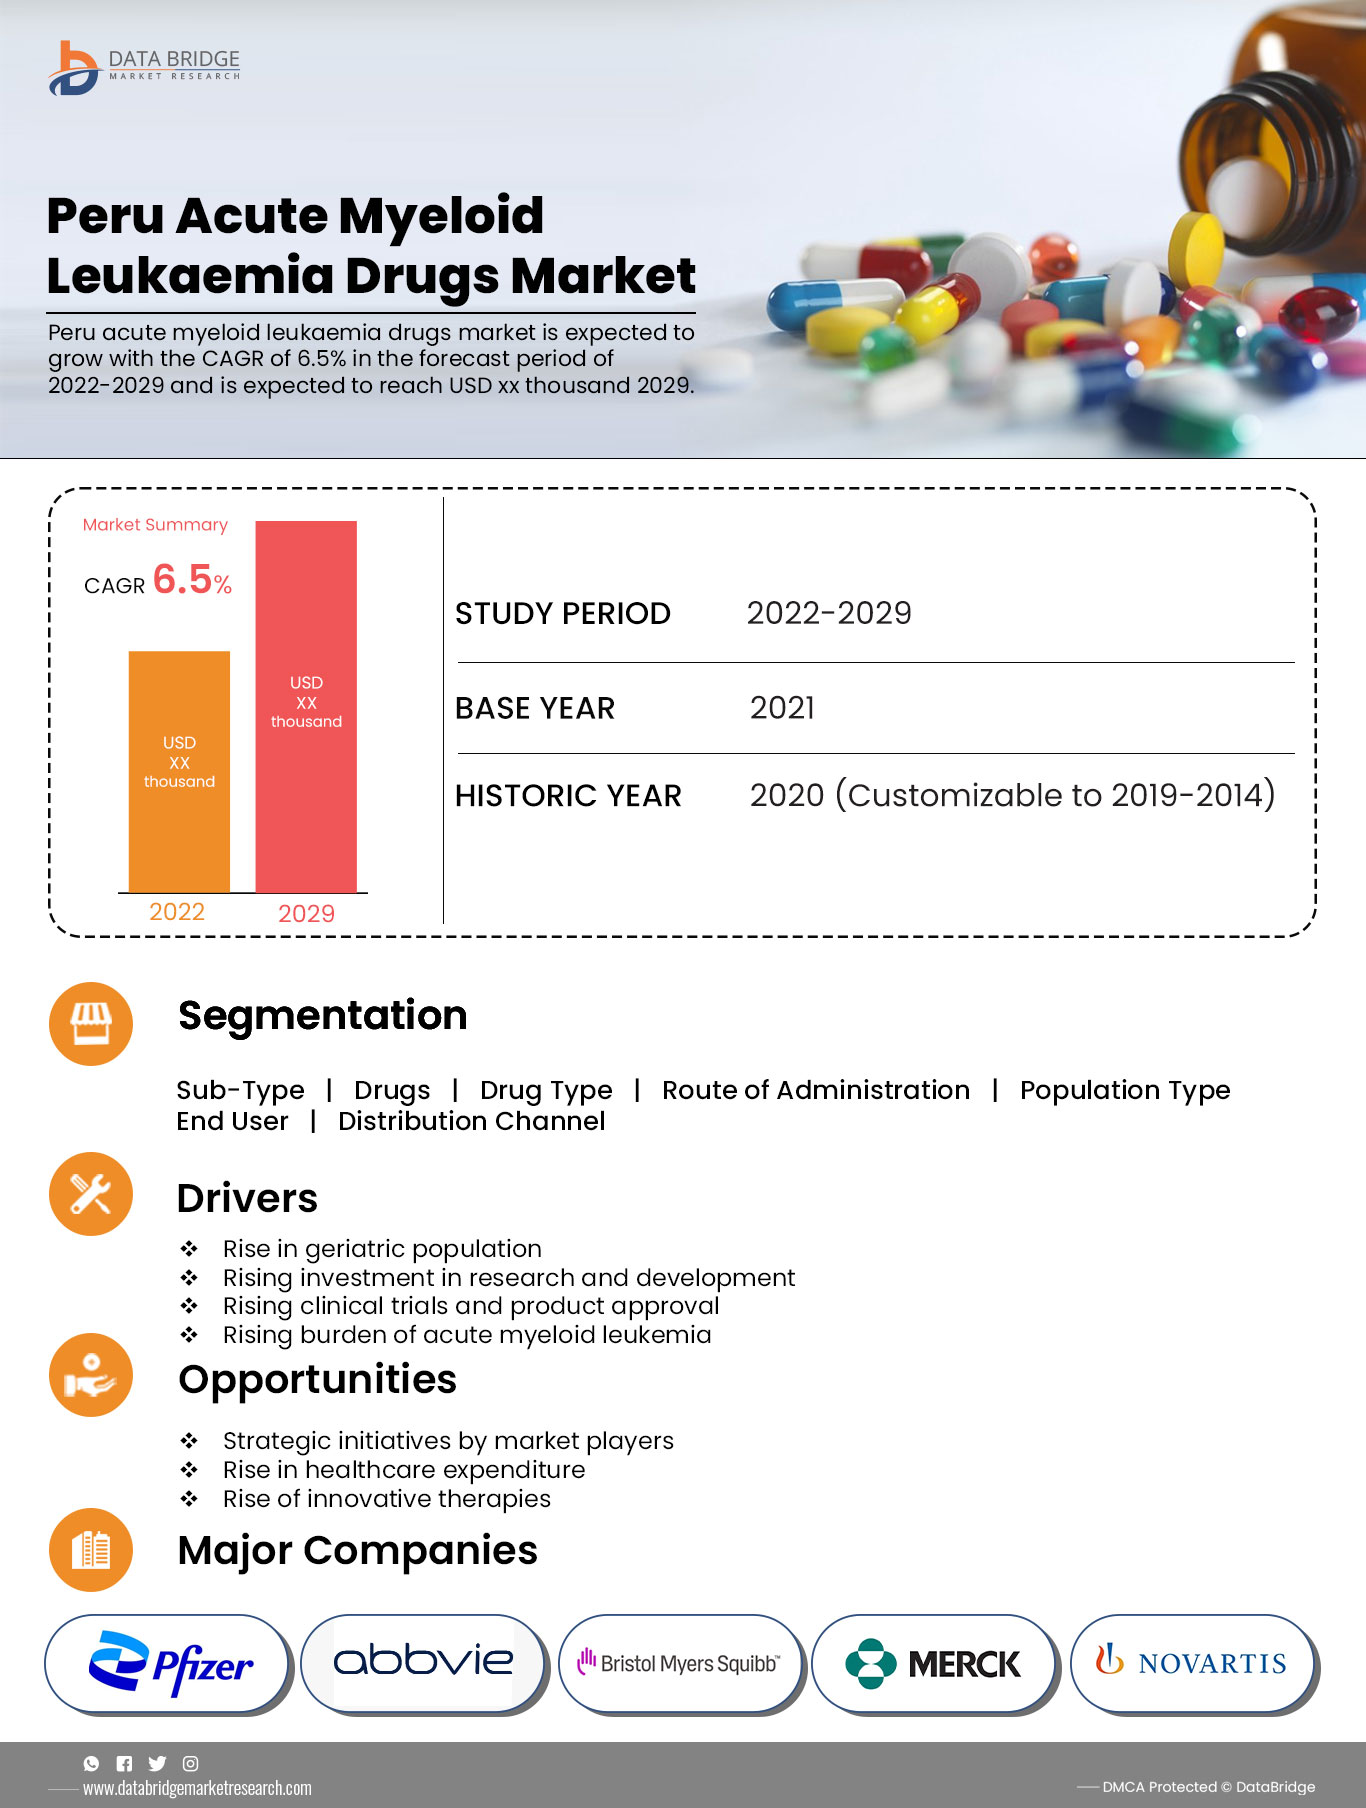 Peru Acute Myeloid Leukemia Drugs Market